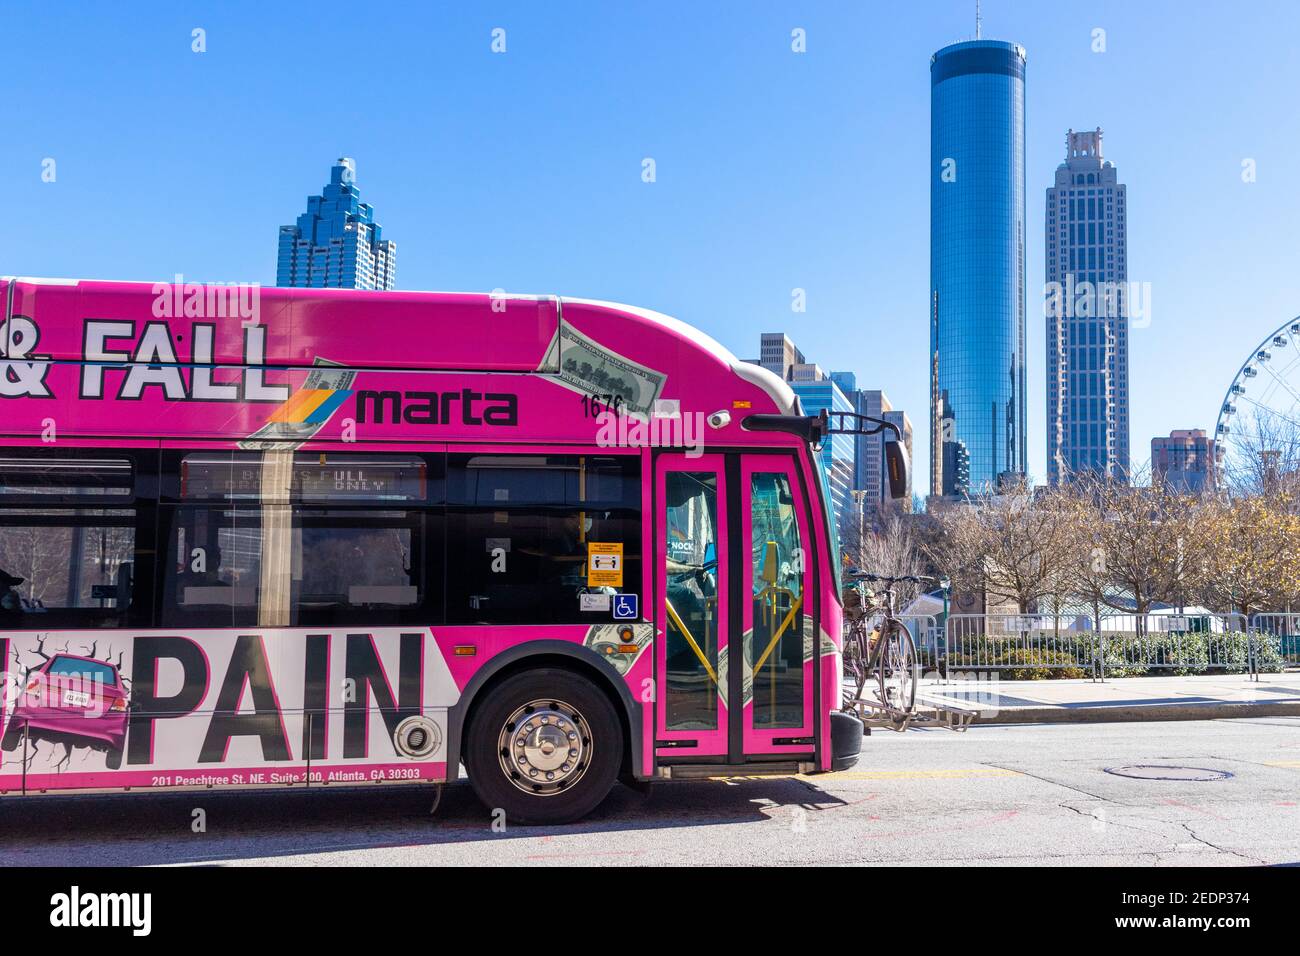 ATLANTA, USA - JAN 17TH 2021: Marta, ground transportation system of the city of Atlanta, USA Stock Photo